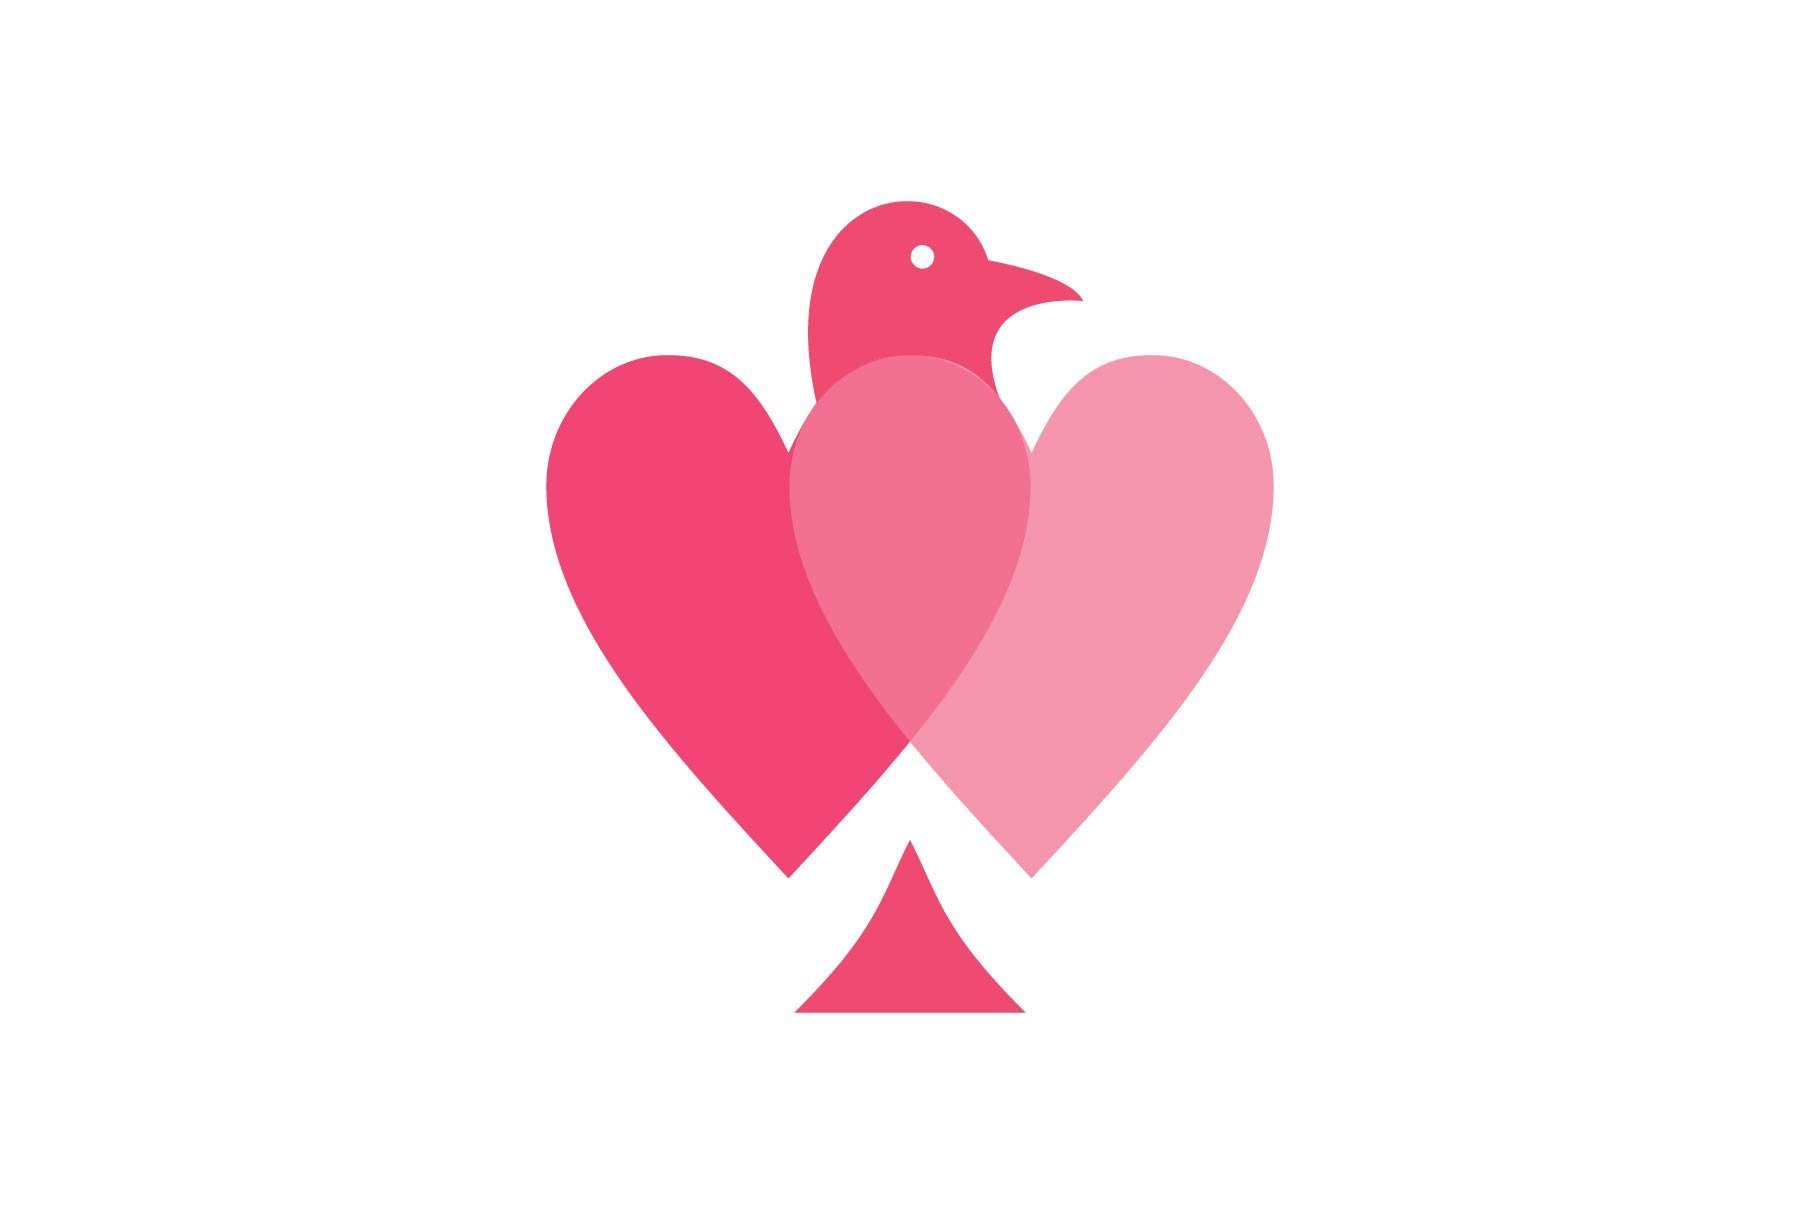 love bird logo cover image.